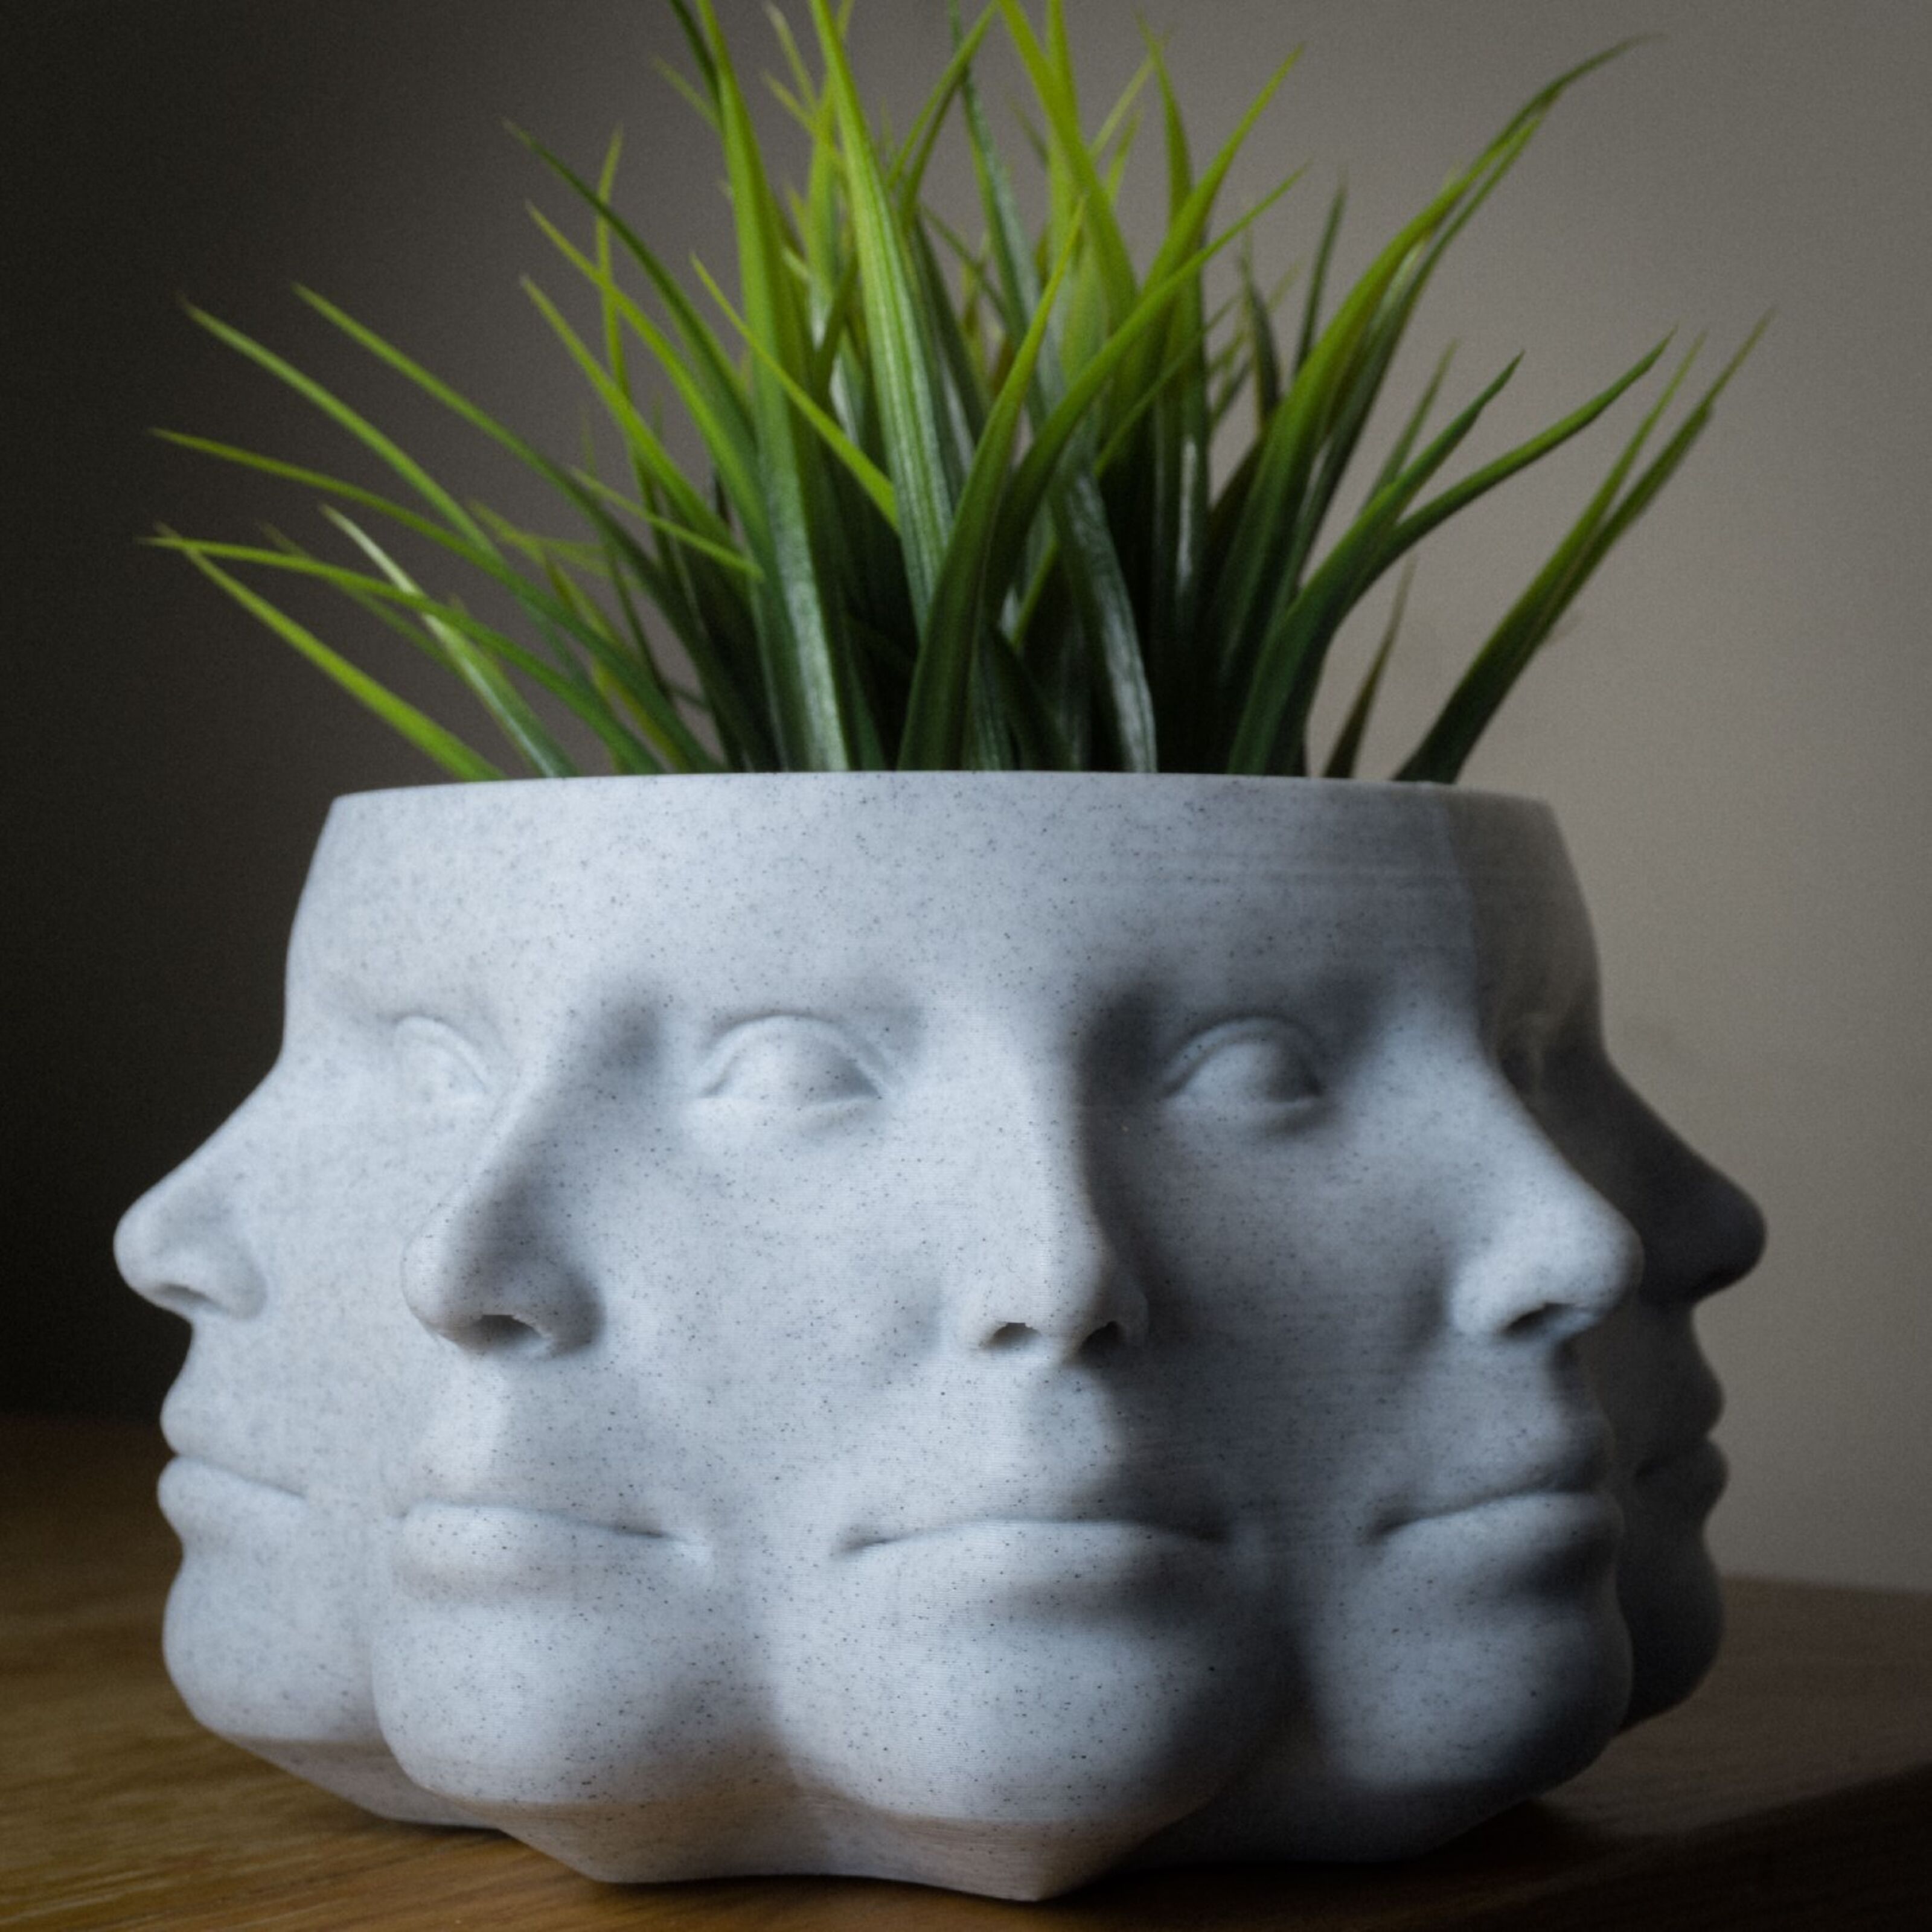 Compra Fioriera multifaccia, vaso per piante faccia - PLA stampato